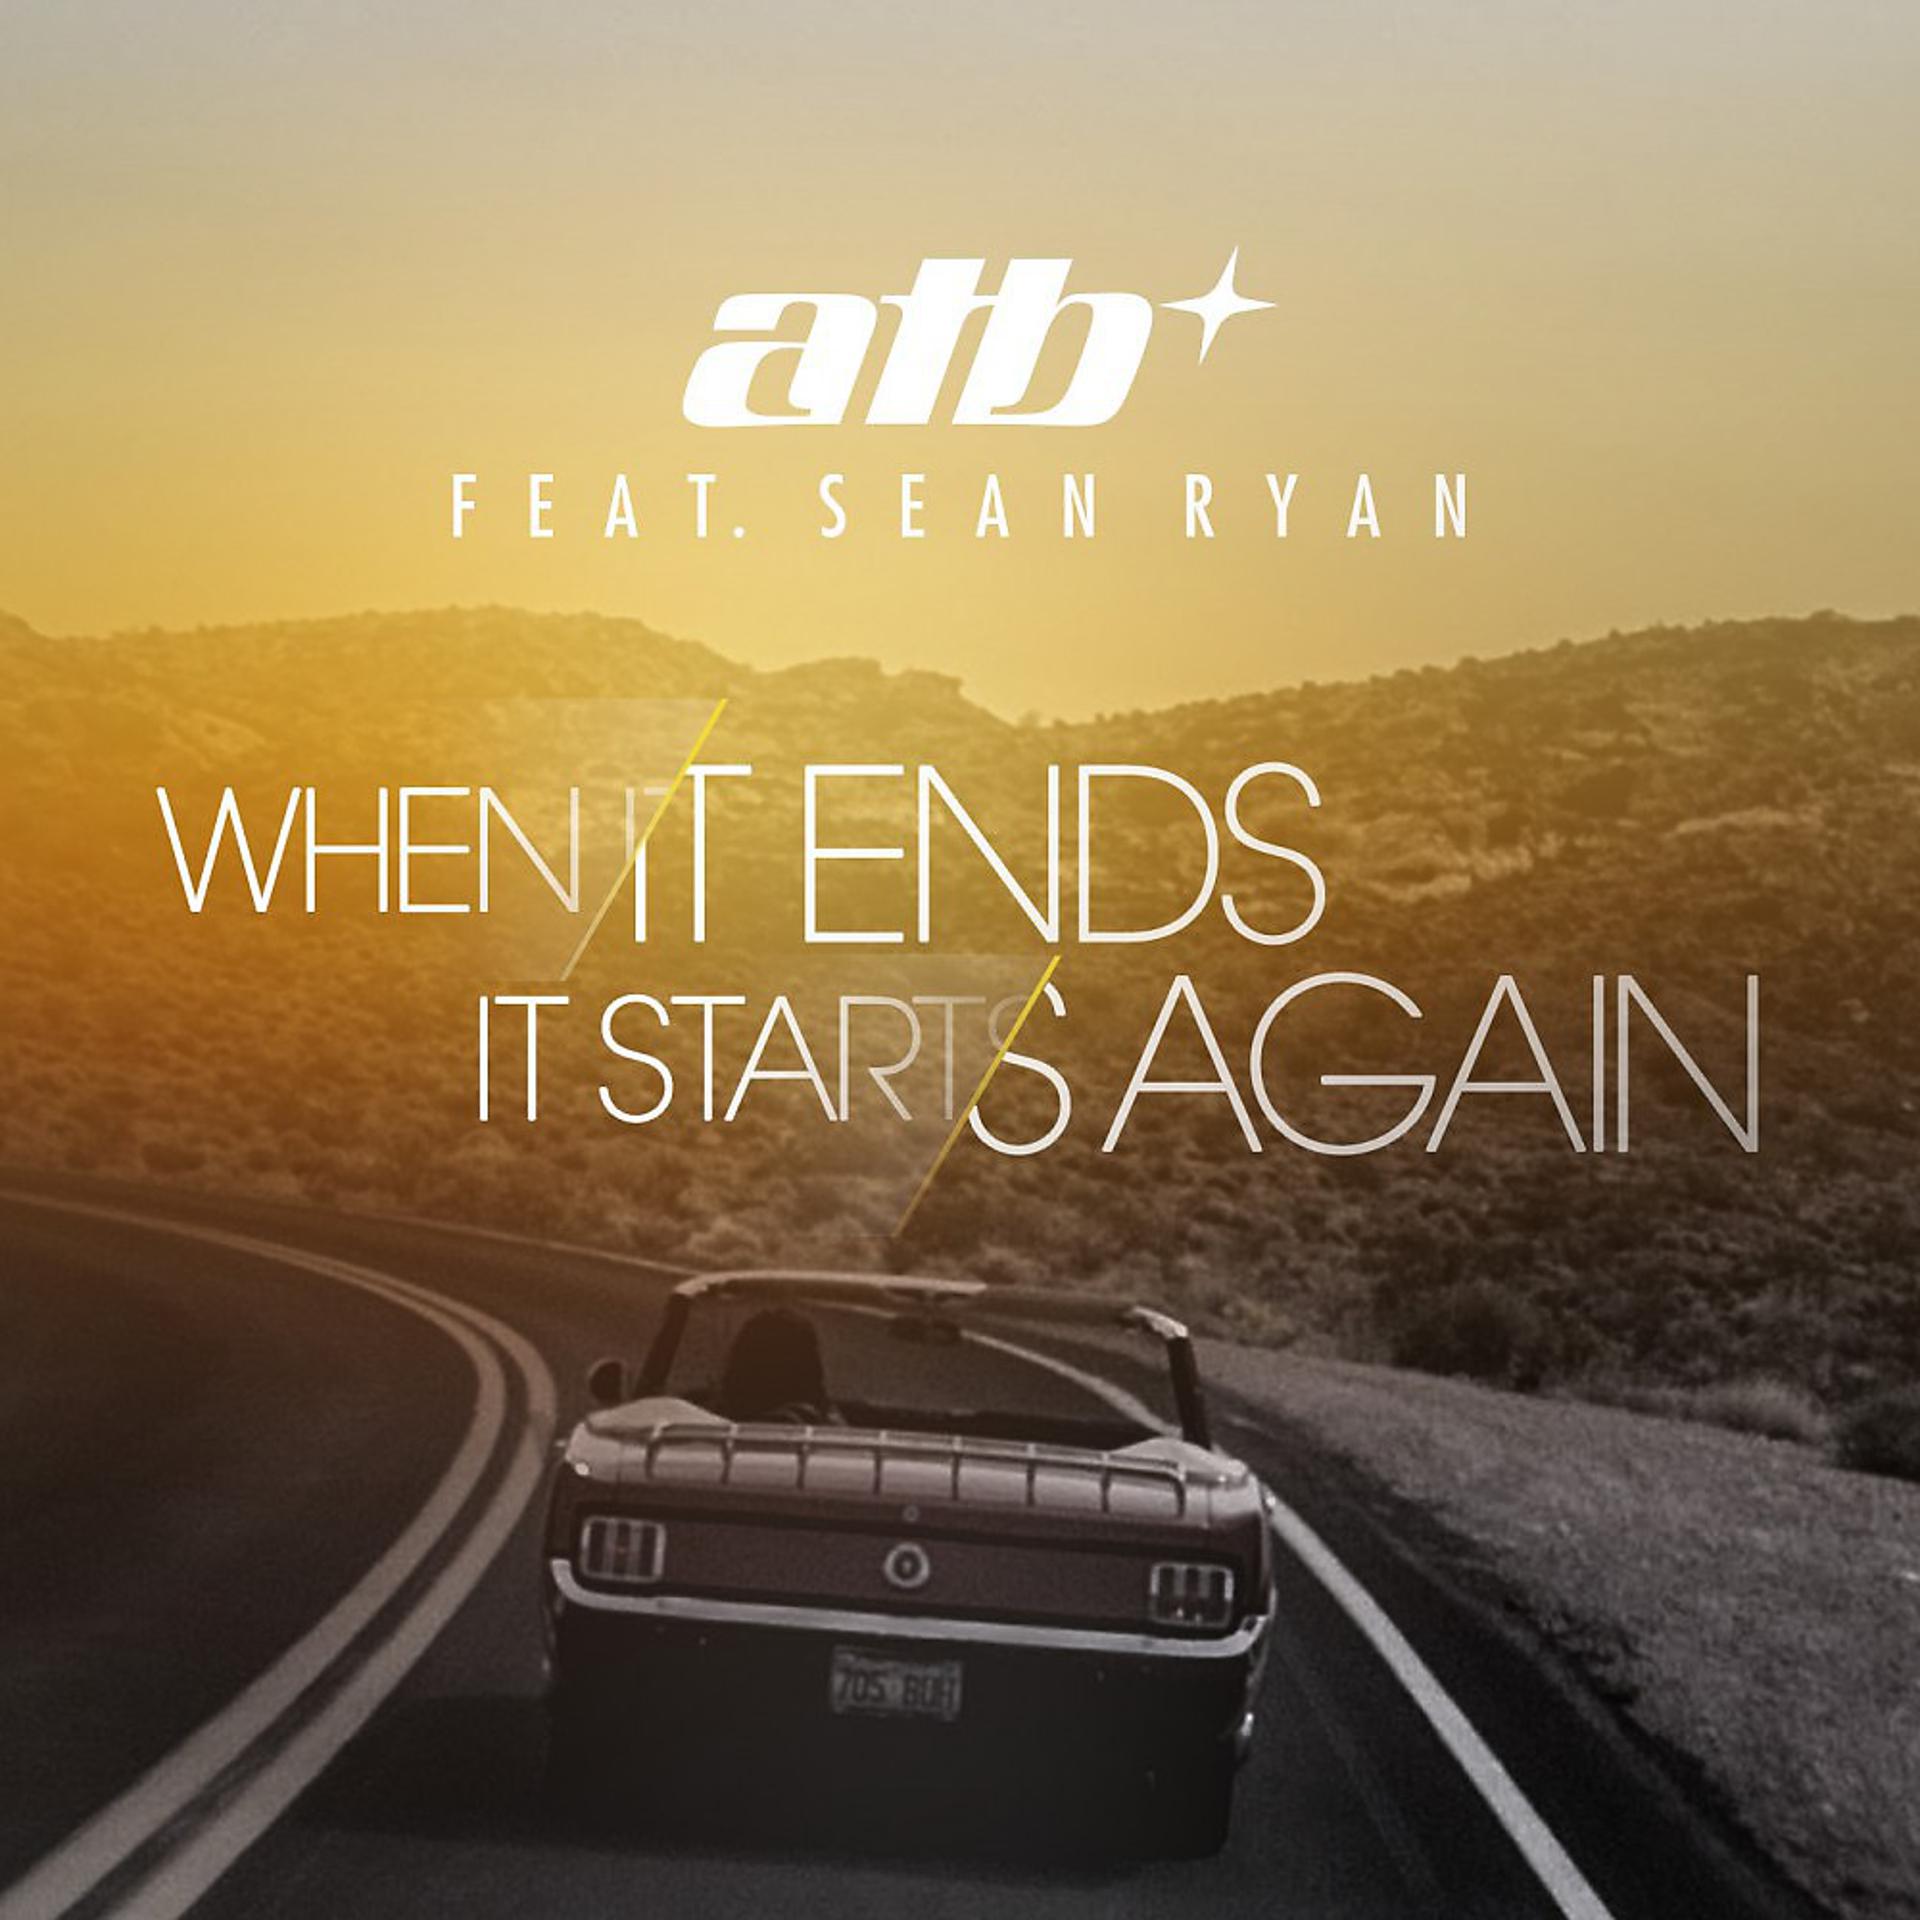 [ATB feat. Sean Ryan] when it ends it starts again. Sean Ryan ATB. ATB альбомы. ATB музыкант альбомы. When it all started